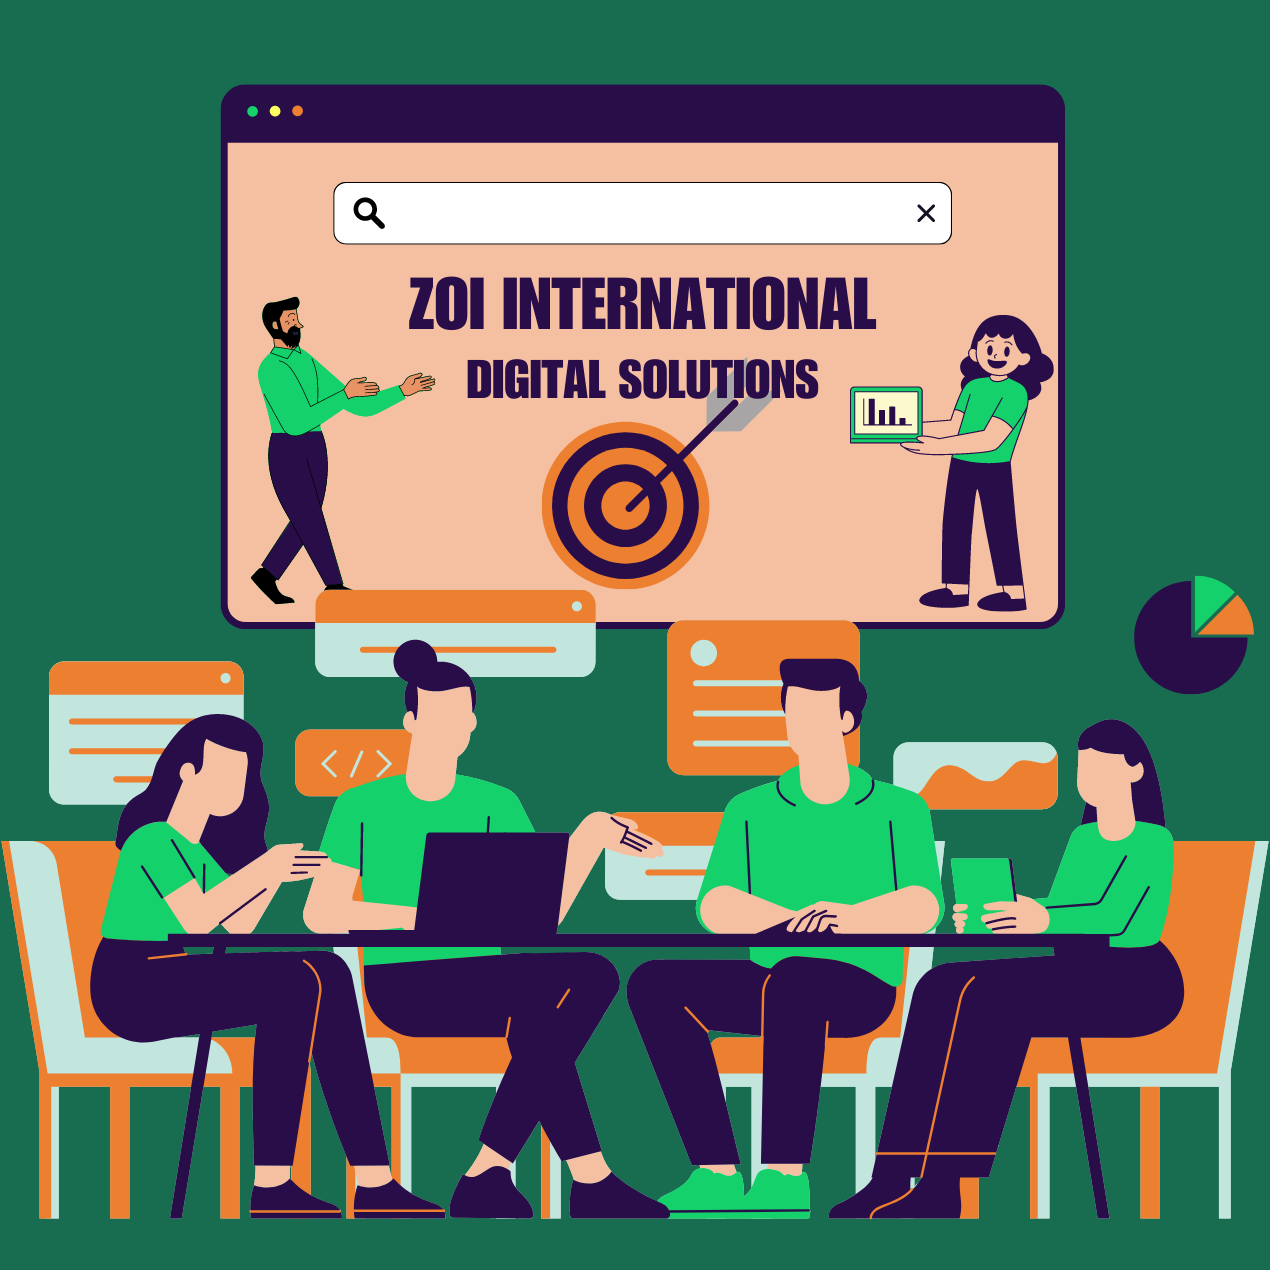 About - Zoi International